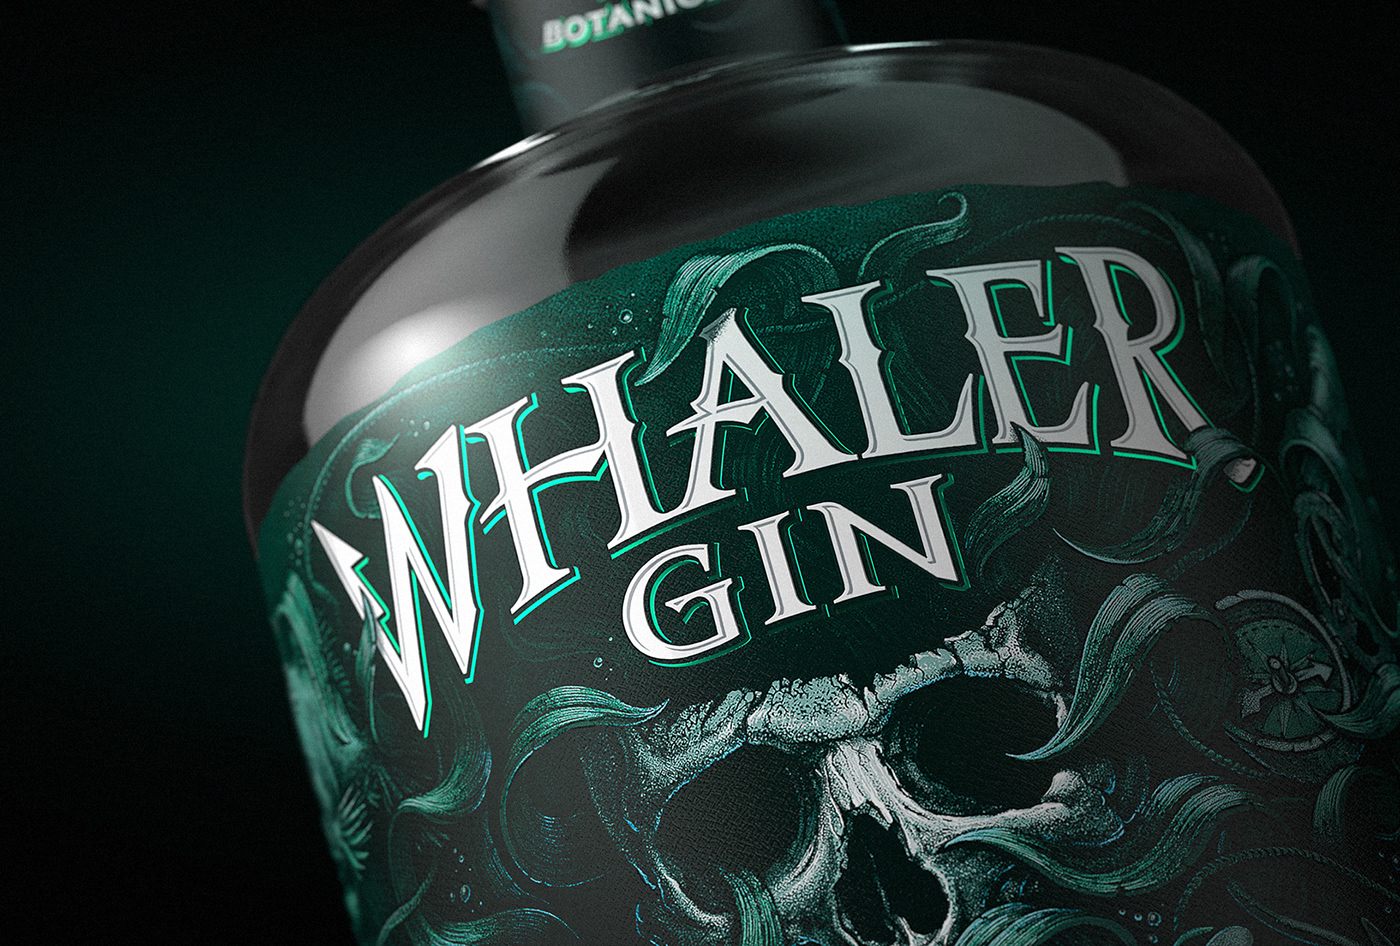 gin Label sea skull whaler branding  Logo Design brand identity Packaging FMCG